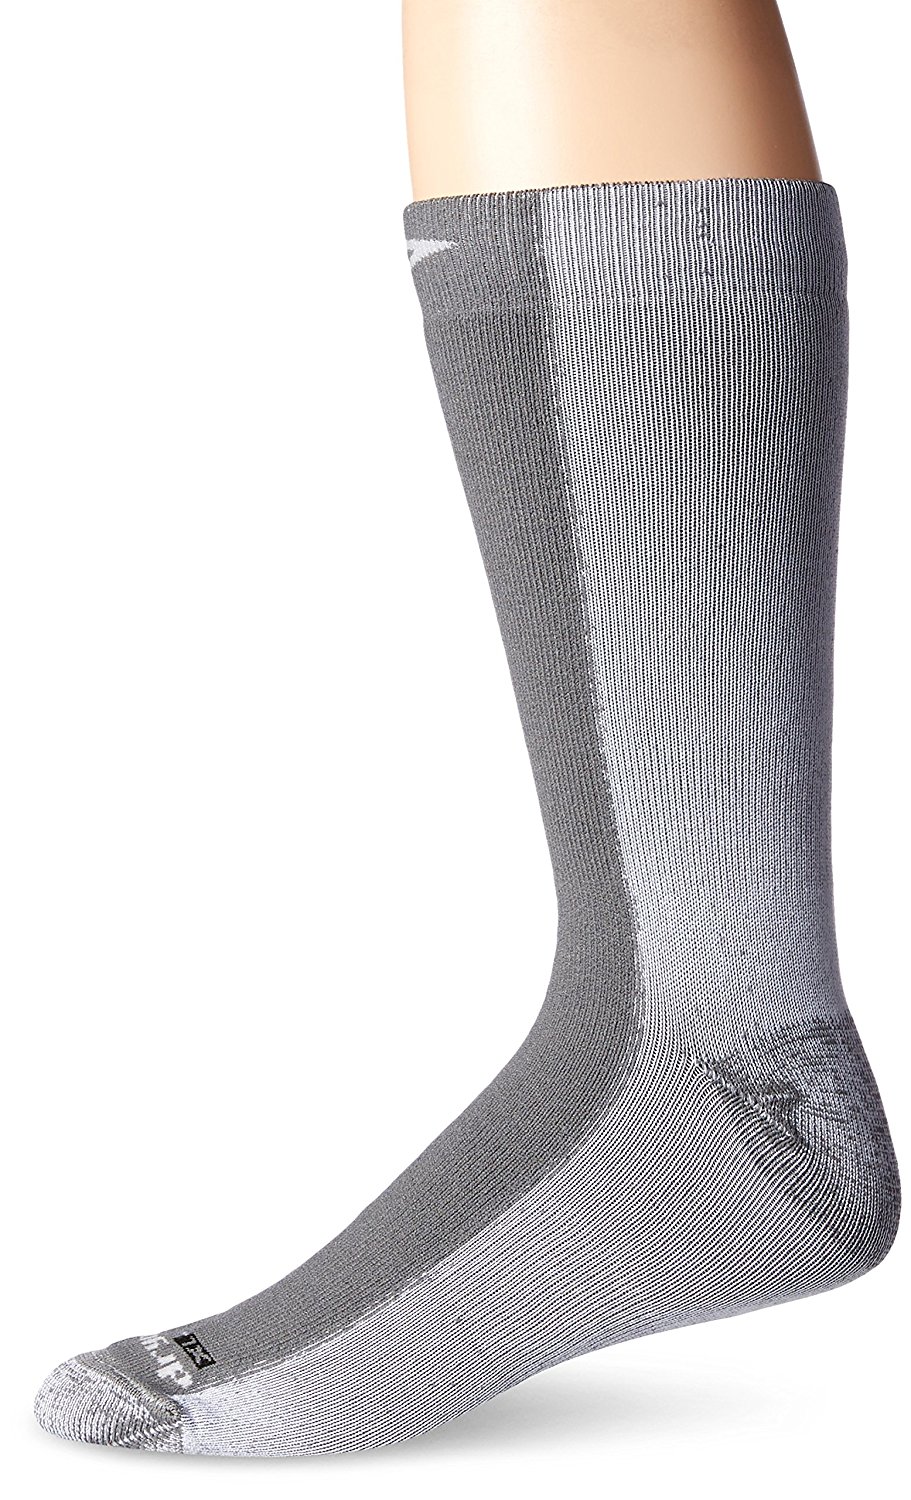 Drymax running socks - 03